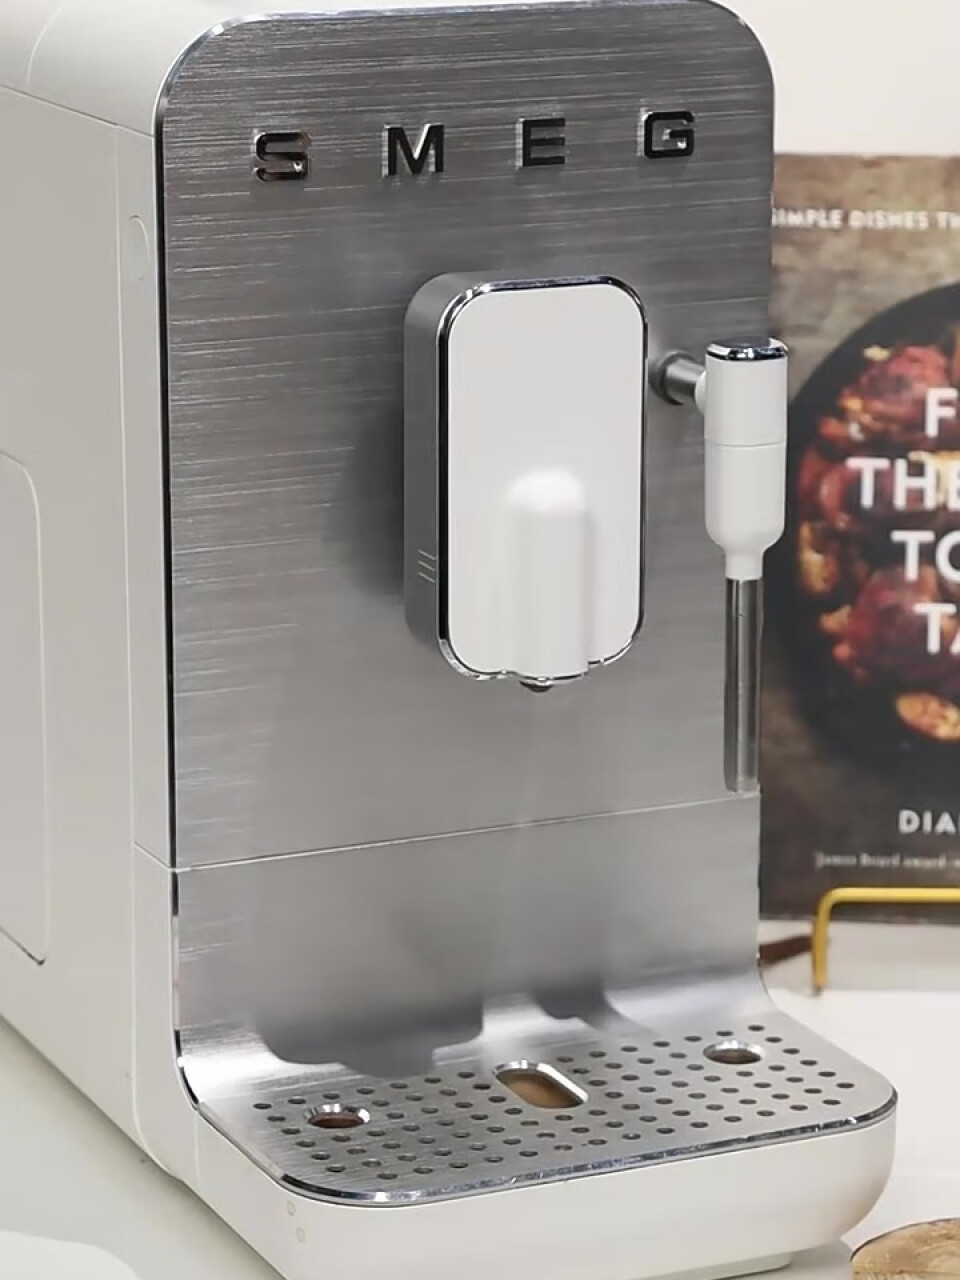 SMEG 斯麦格 意大利意式咖啡机全自动家用 蒸汽打奶泡 磨豆机咖啡豆研磨机 BCC02 白色,第2张